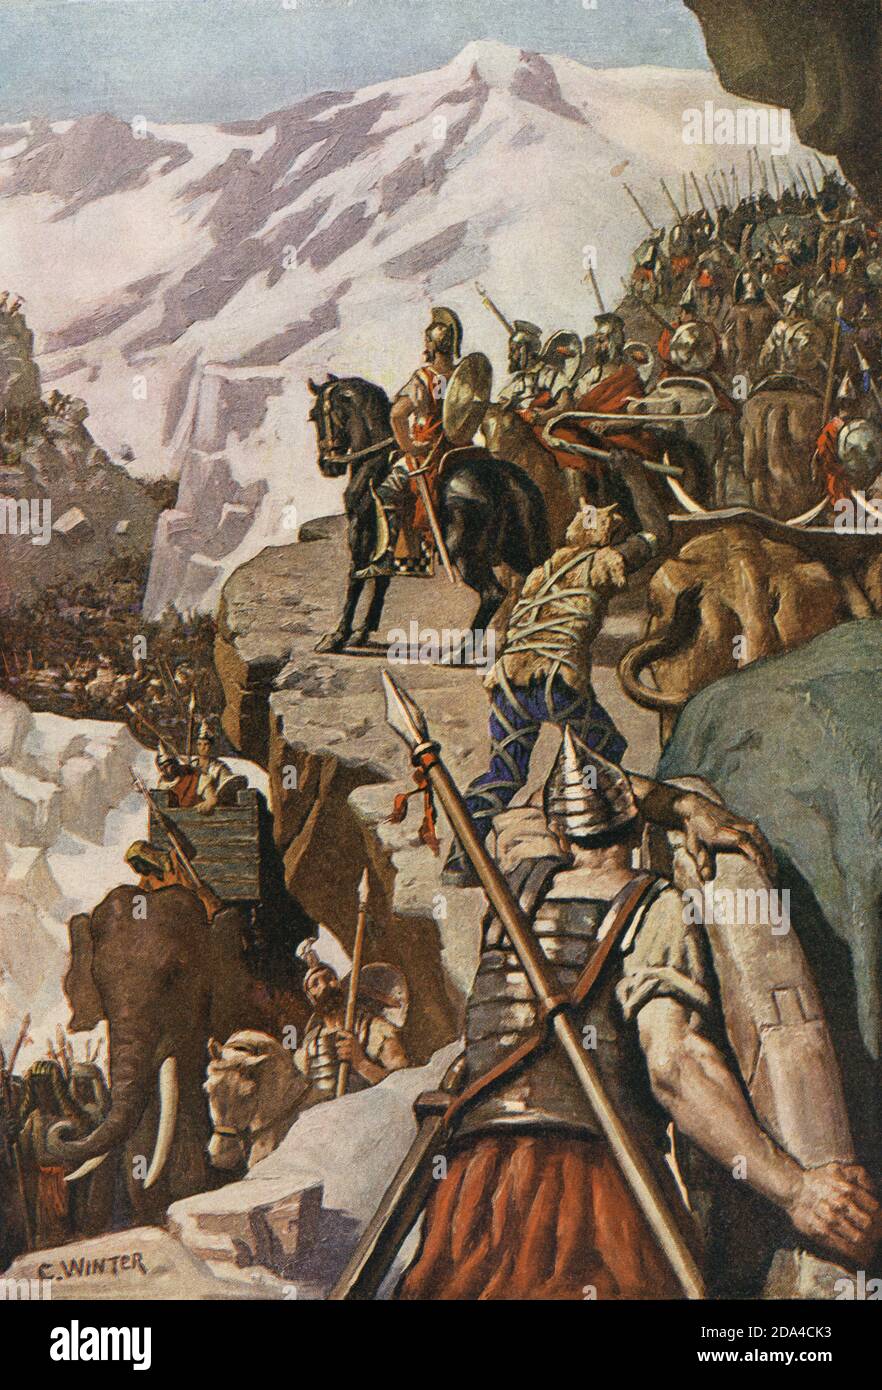 Hannibal überquert die Alpen im Jahre 218 v. Chr. auf seinem Weg nach Italien während des Zweiten Punischen Krieges einzudringen. Nach einer Arbeit von Charles Winter. Stockfoto